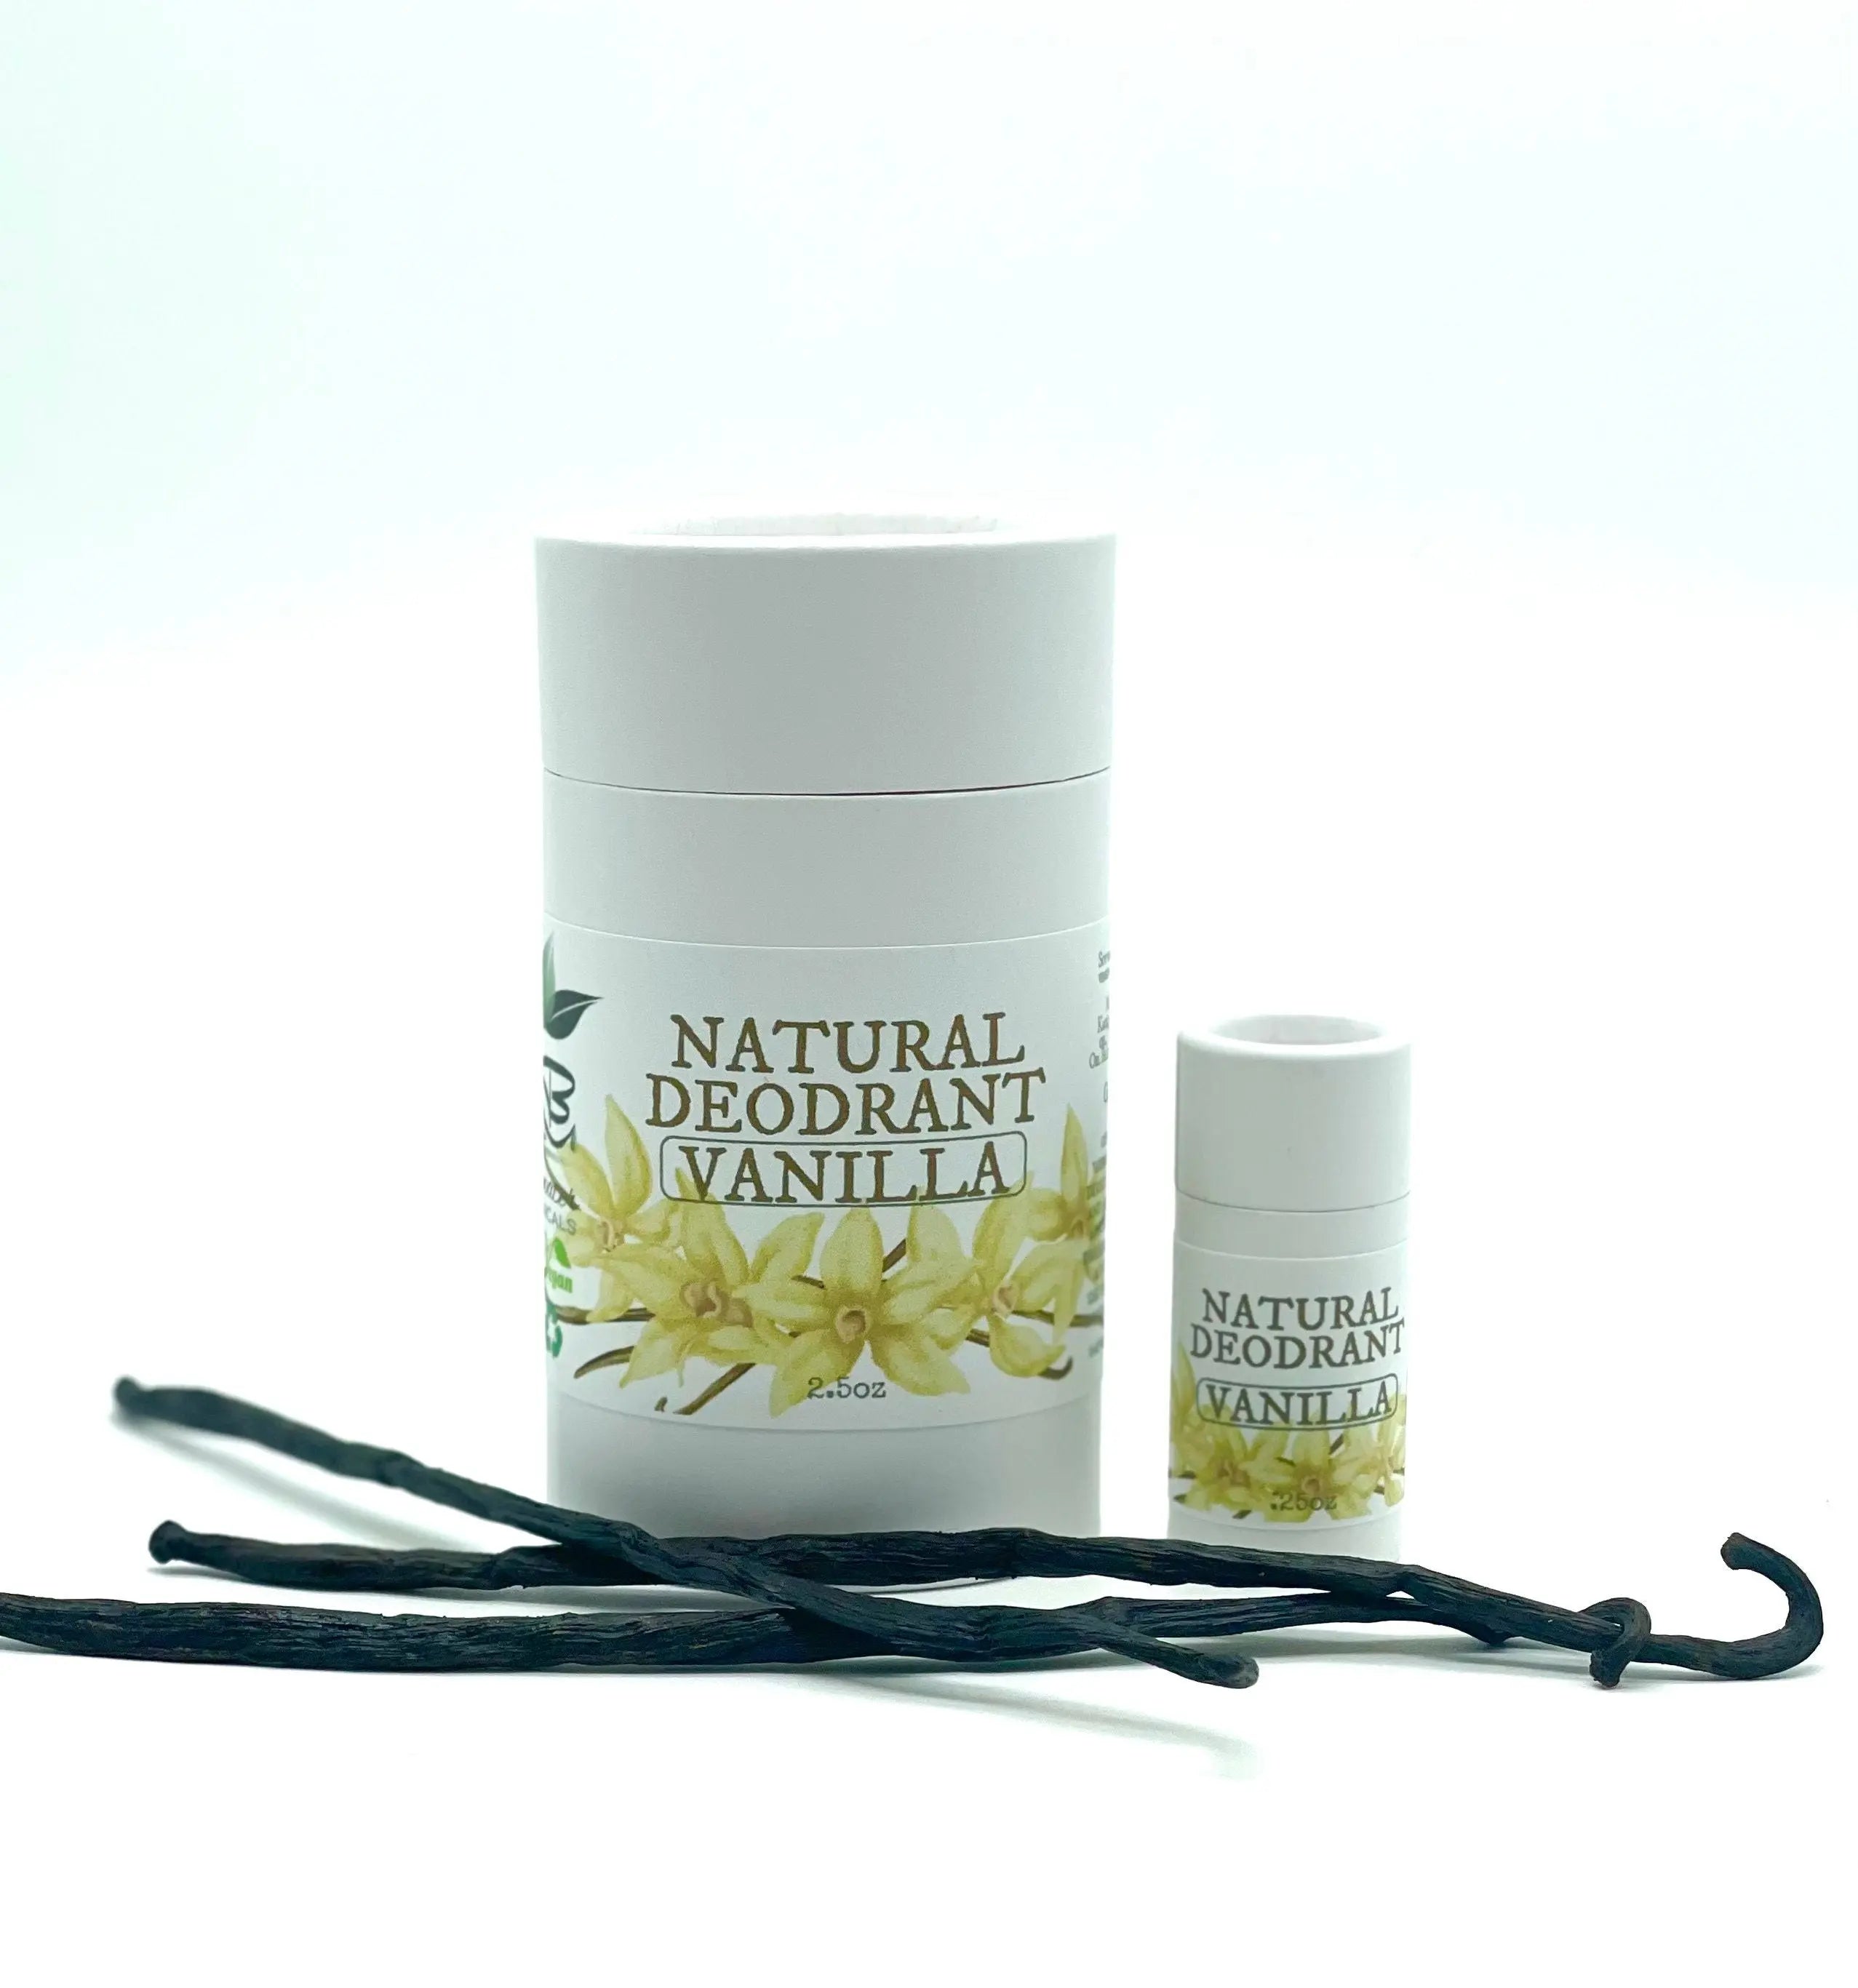 Vanilla Natural Deodorant for sensitive skin